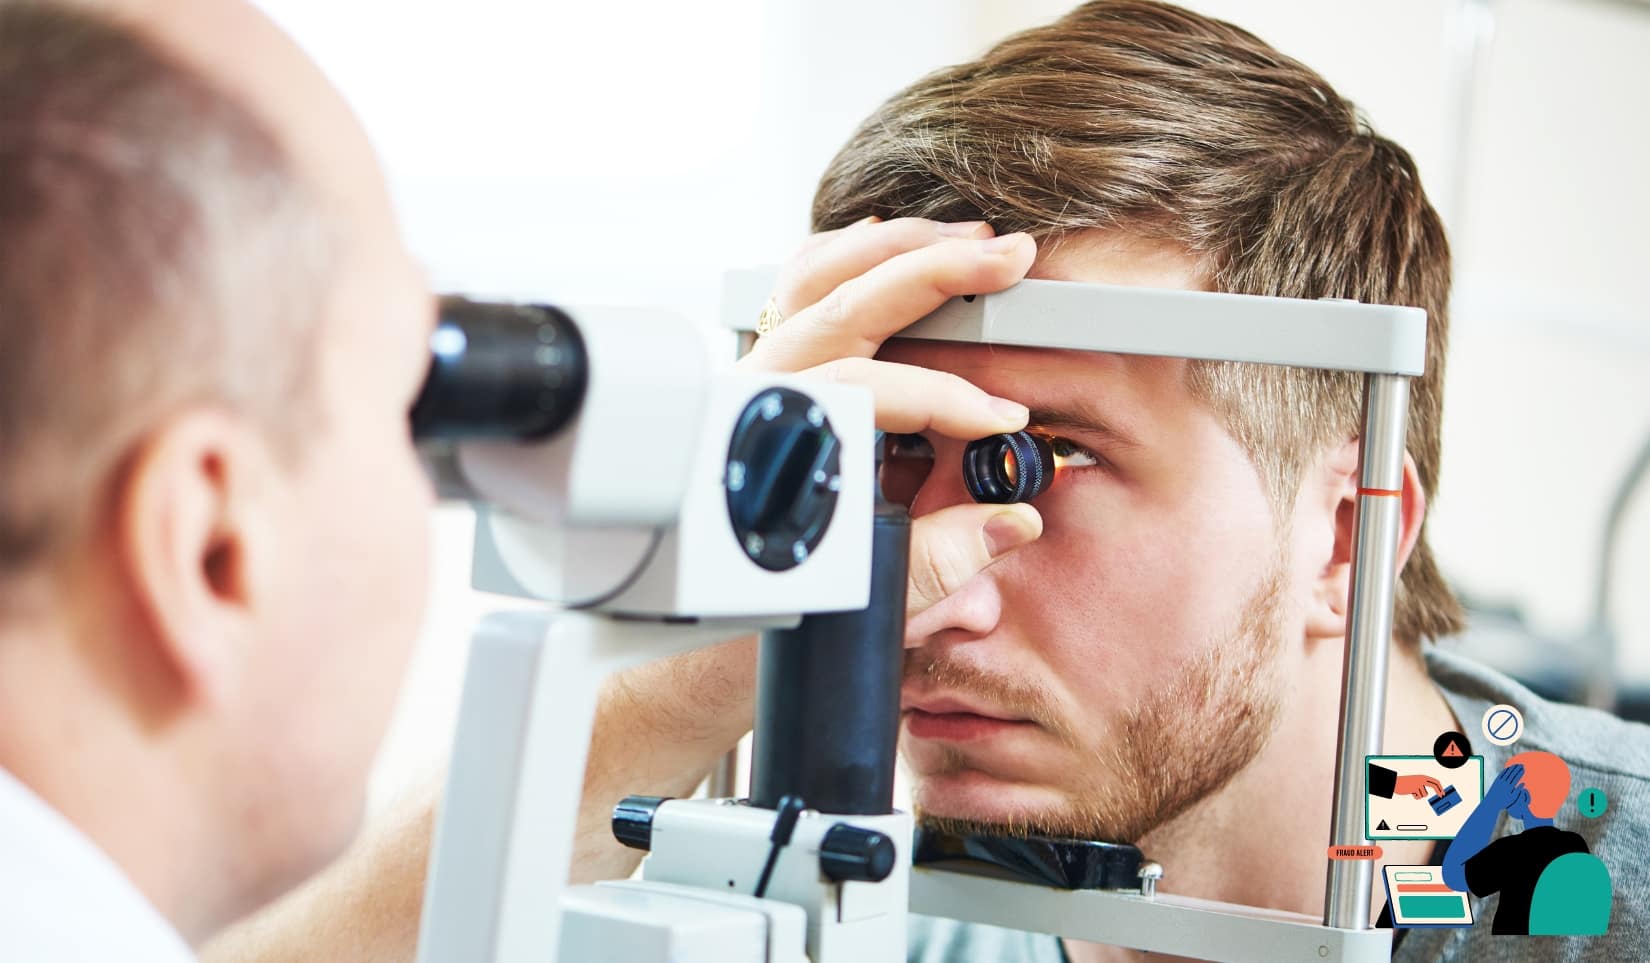 Scandale Ophtalmologie Express : Fraude de plusieurs millions d'euros suspecté ophtalmologie fraude